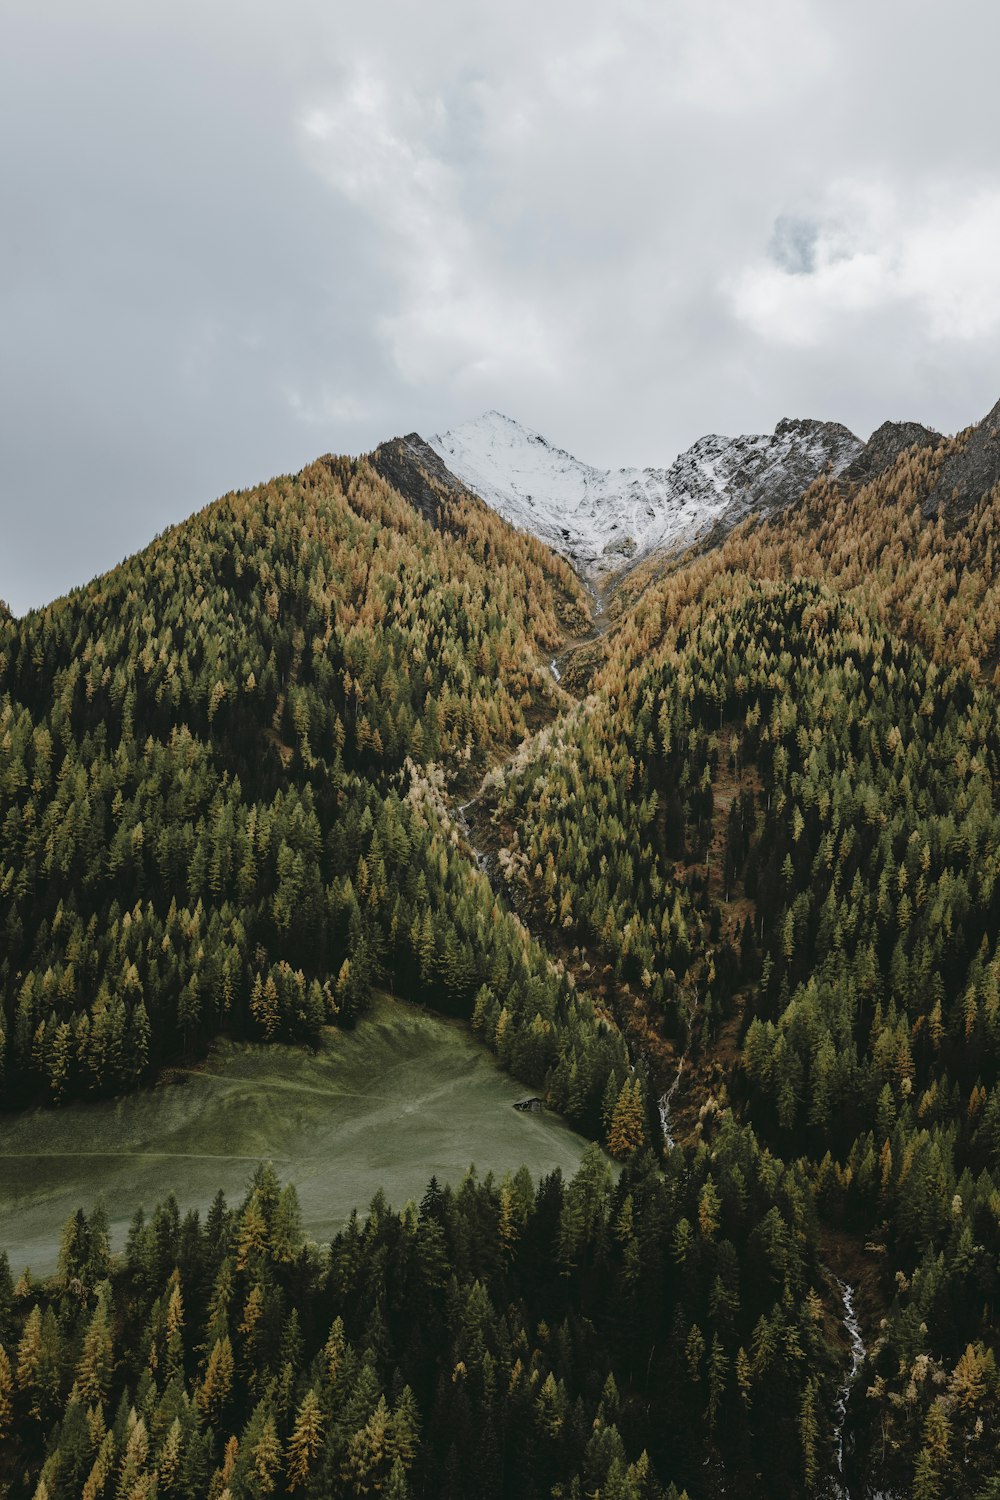 Una vista de una montaña con árboles y nieve en la cima